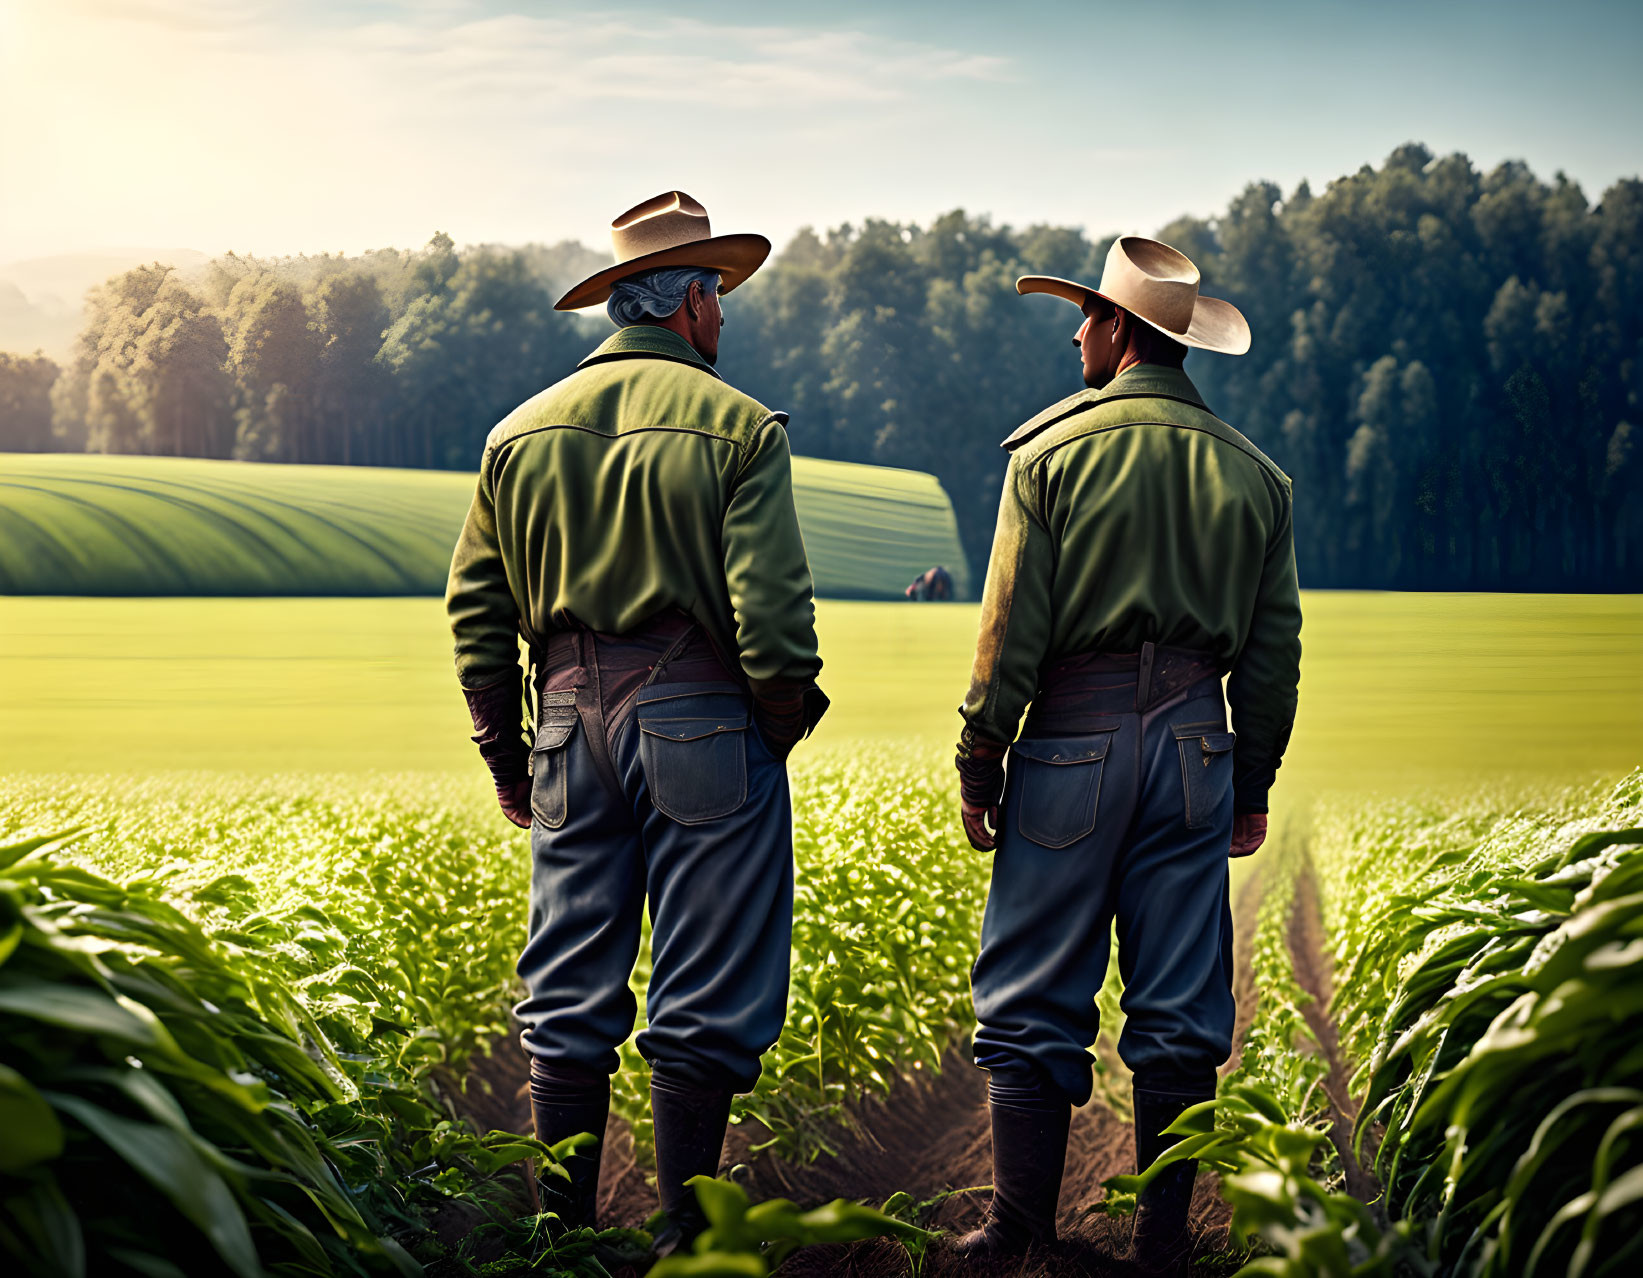 Farmers on a Field